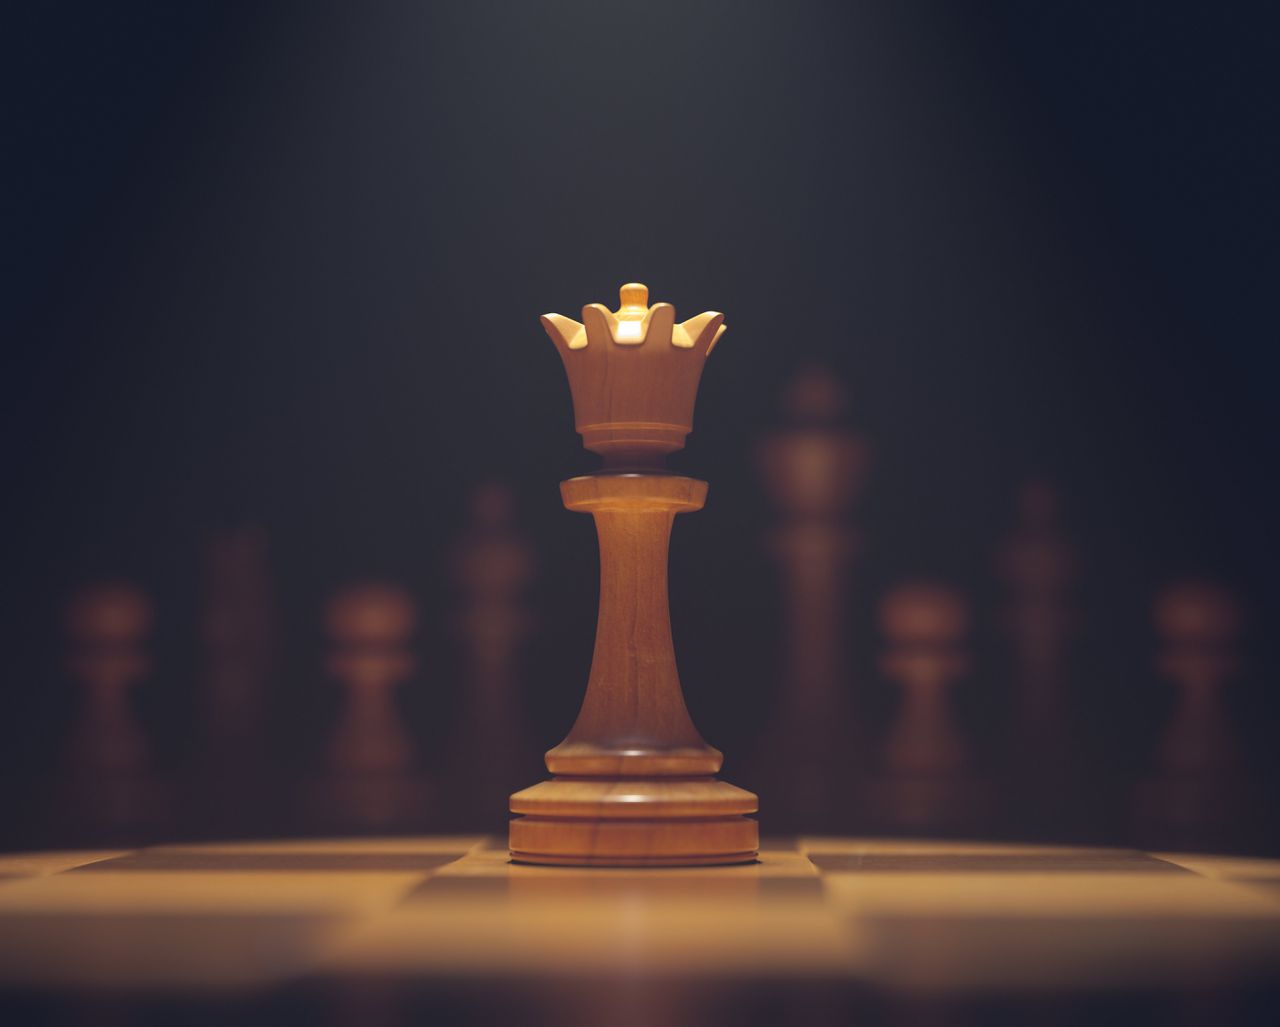 Hoeveel koninginnen passen er op een schaakdonut? 